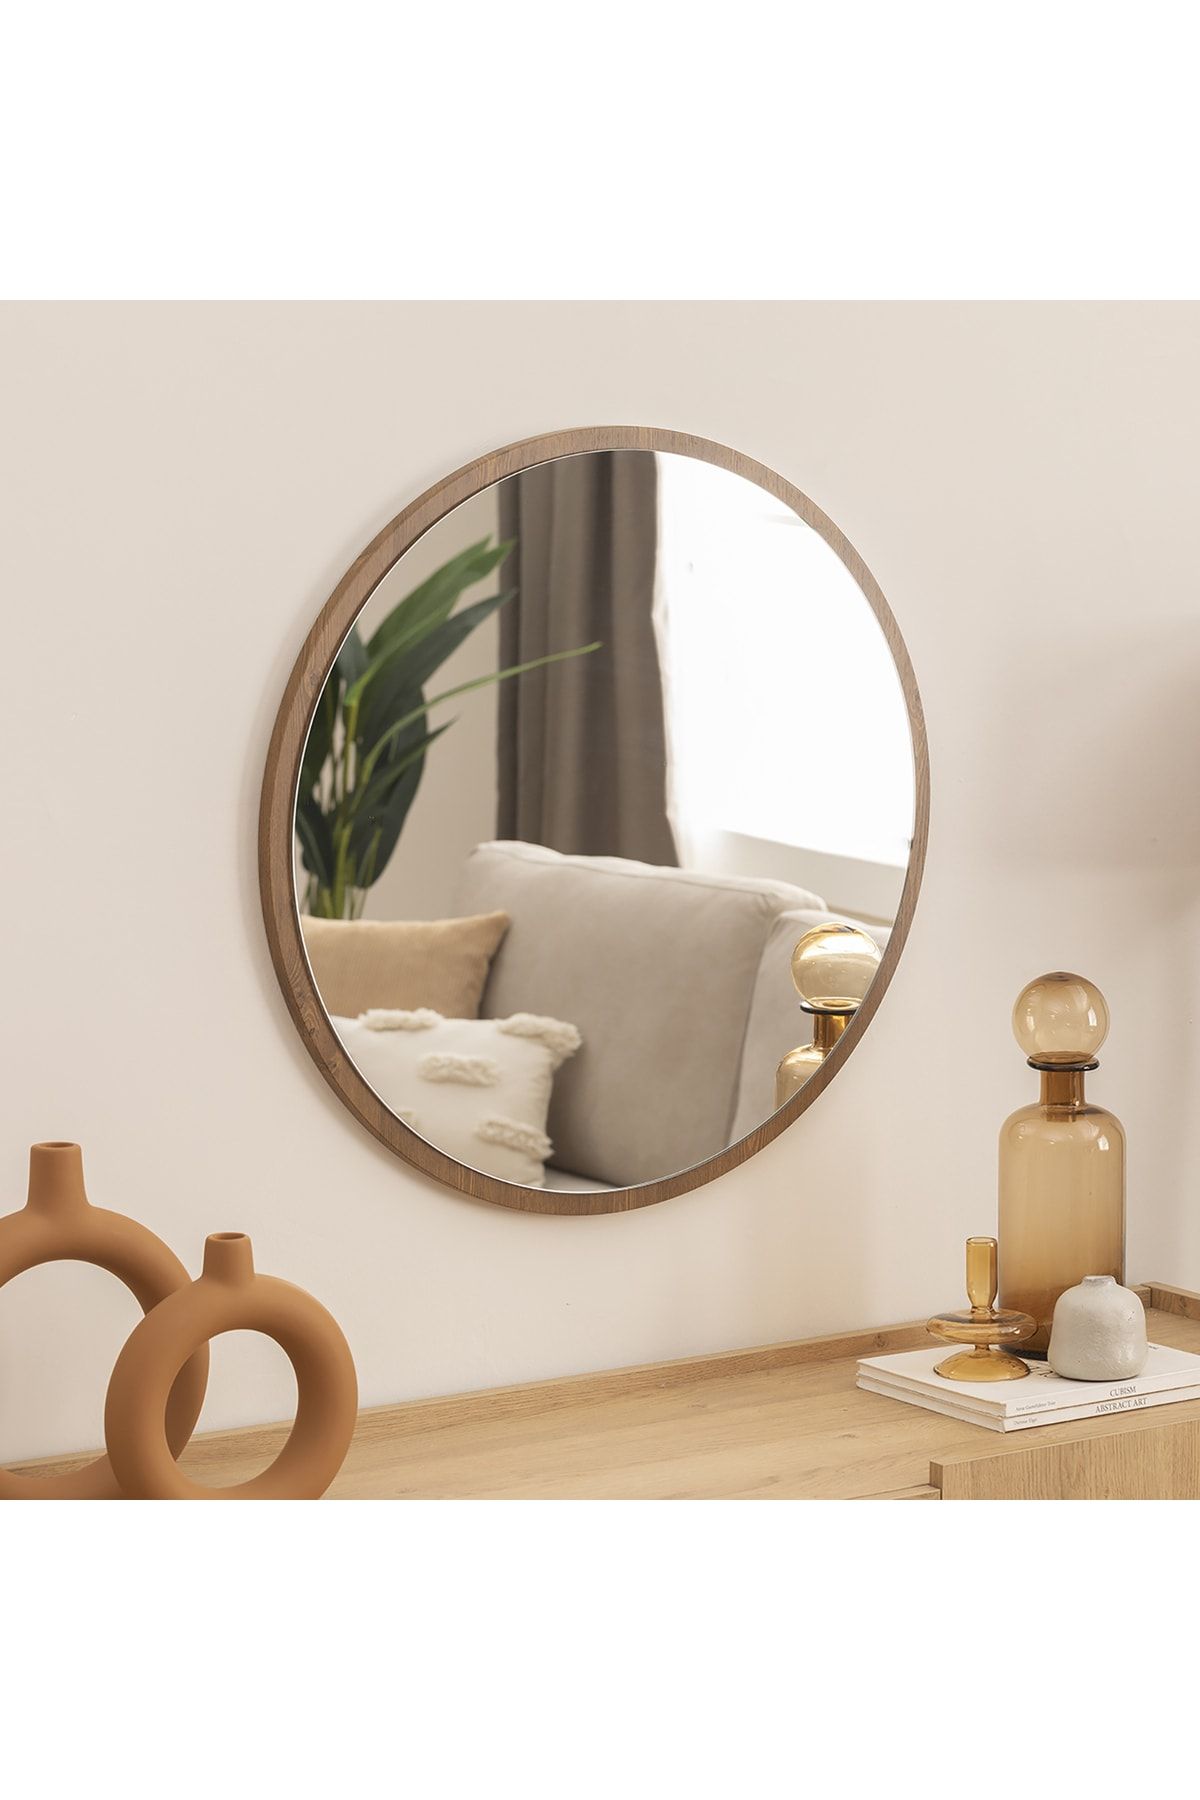 DFN WOOD Kahverengi Mdf Yuvarlak Duvar Salon Banyo Aynası 50 Cm